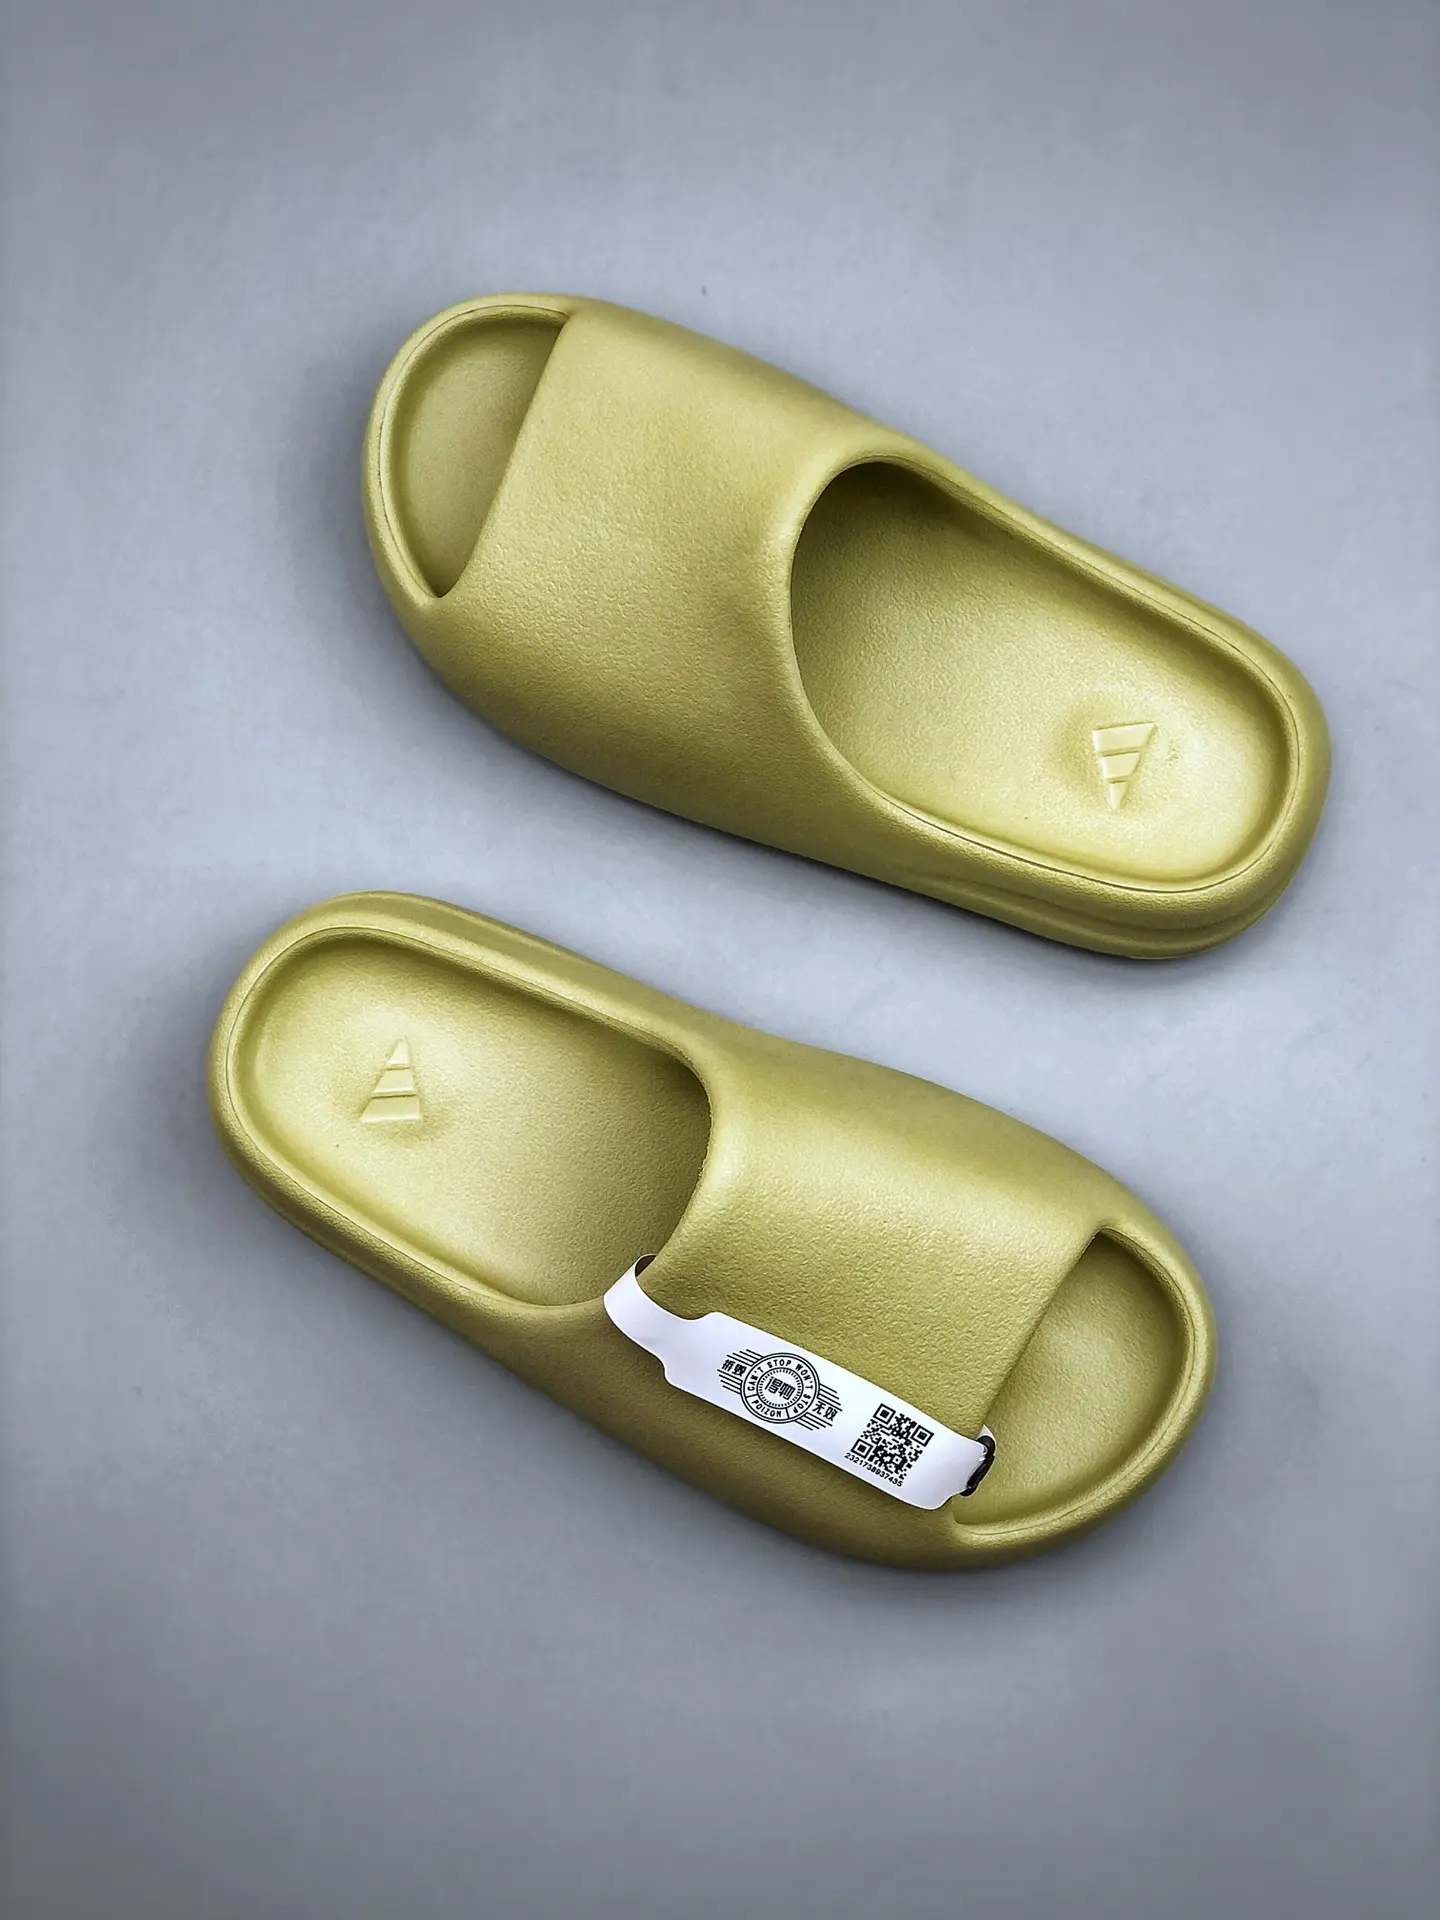 YASSW | Adidas Yeezy Slide Resin Fz5904 Review